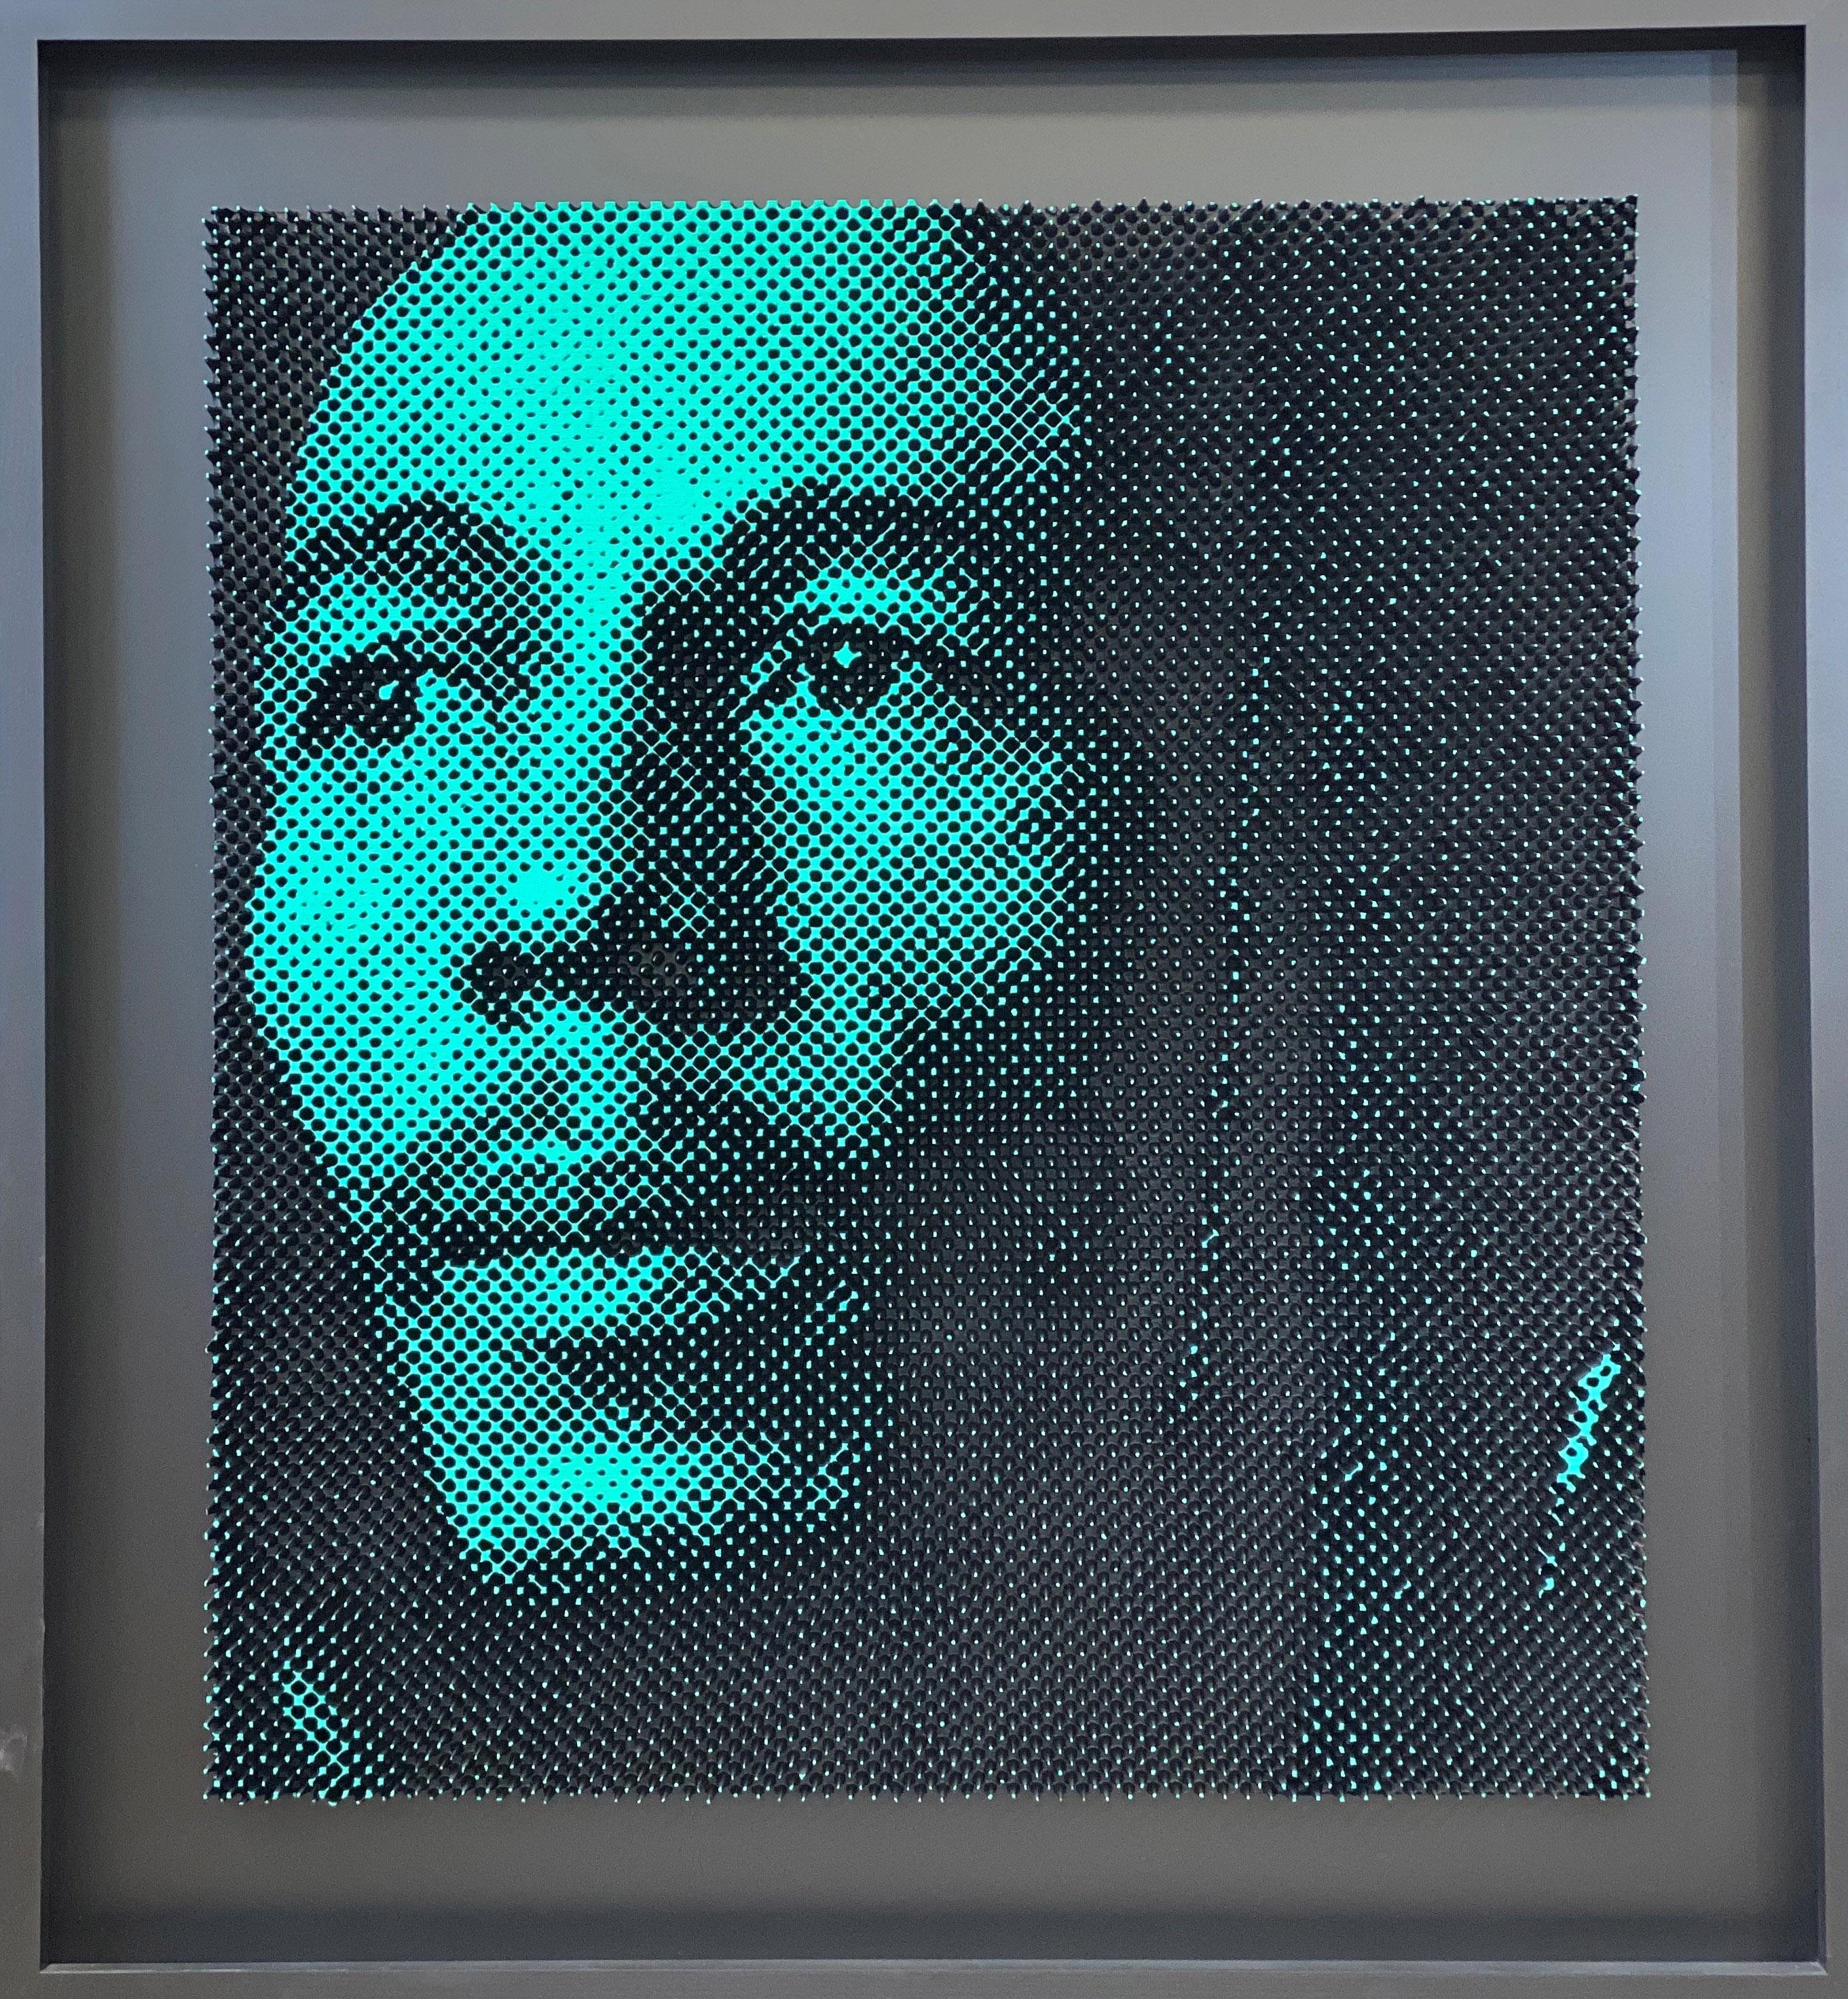 Marley - Mixed Media Art by Yann C